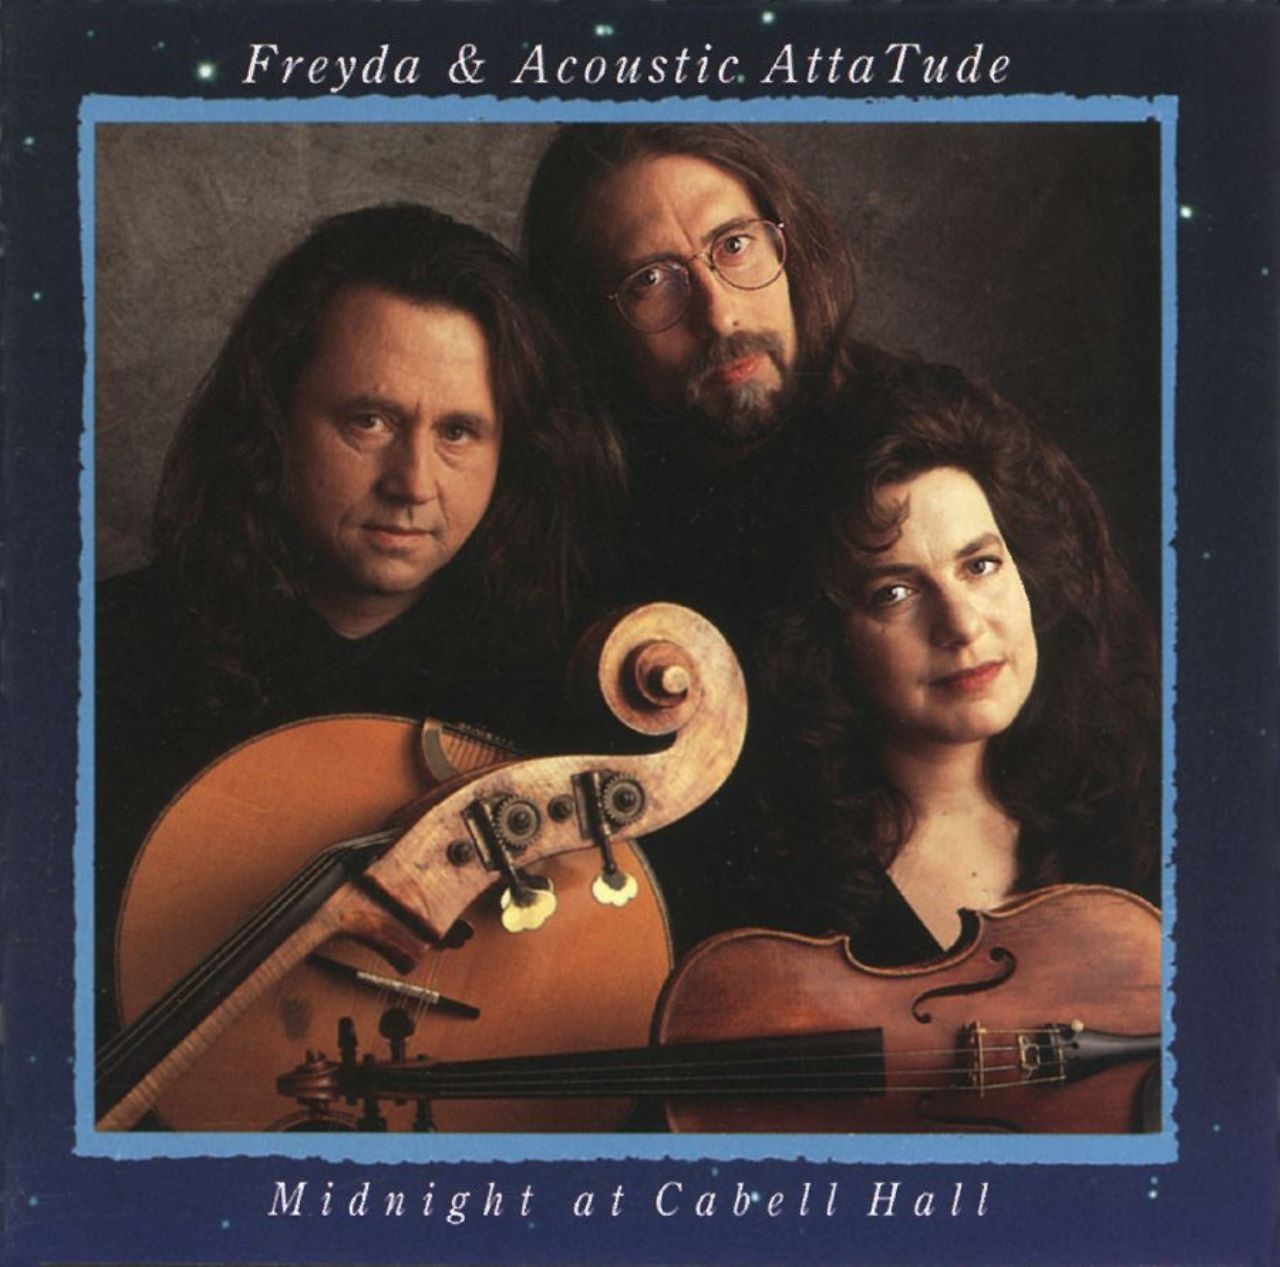 Recensione album di Freyda & Acoustic Attatude – “Midnight At Cabell Hall” di Dino Della Casa, Out Of Time